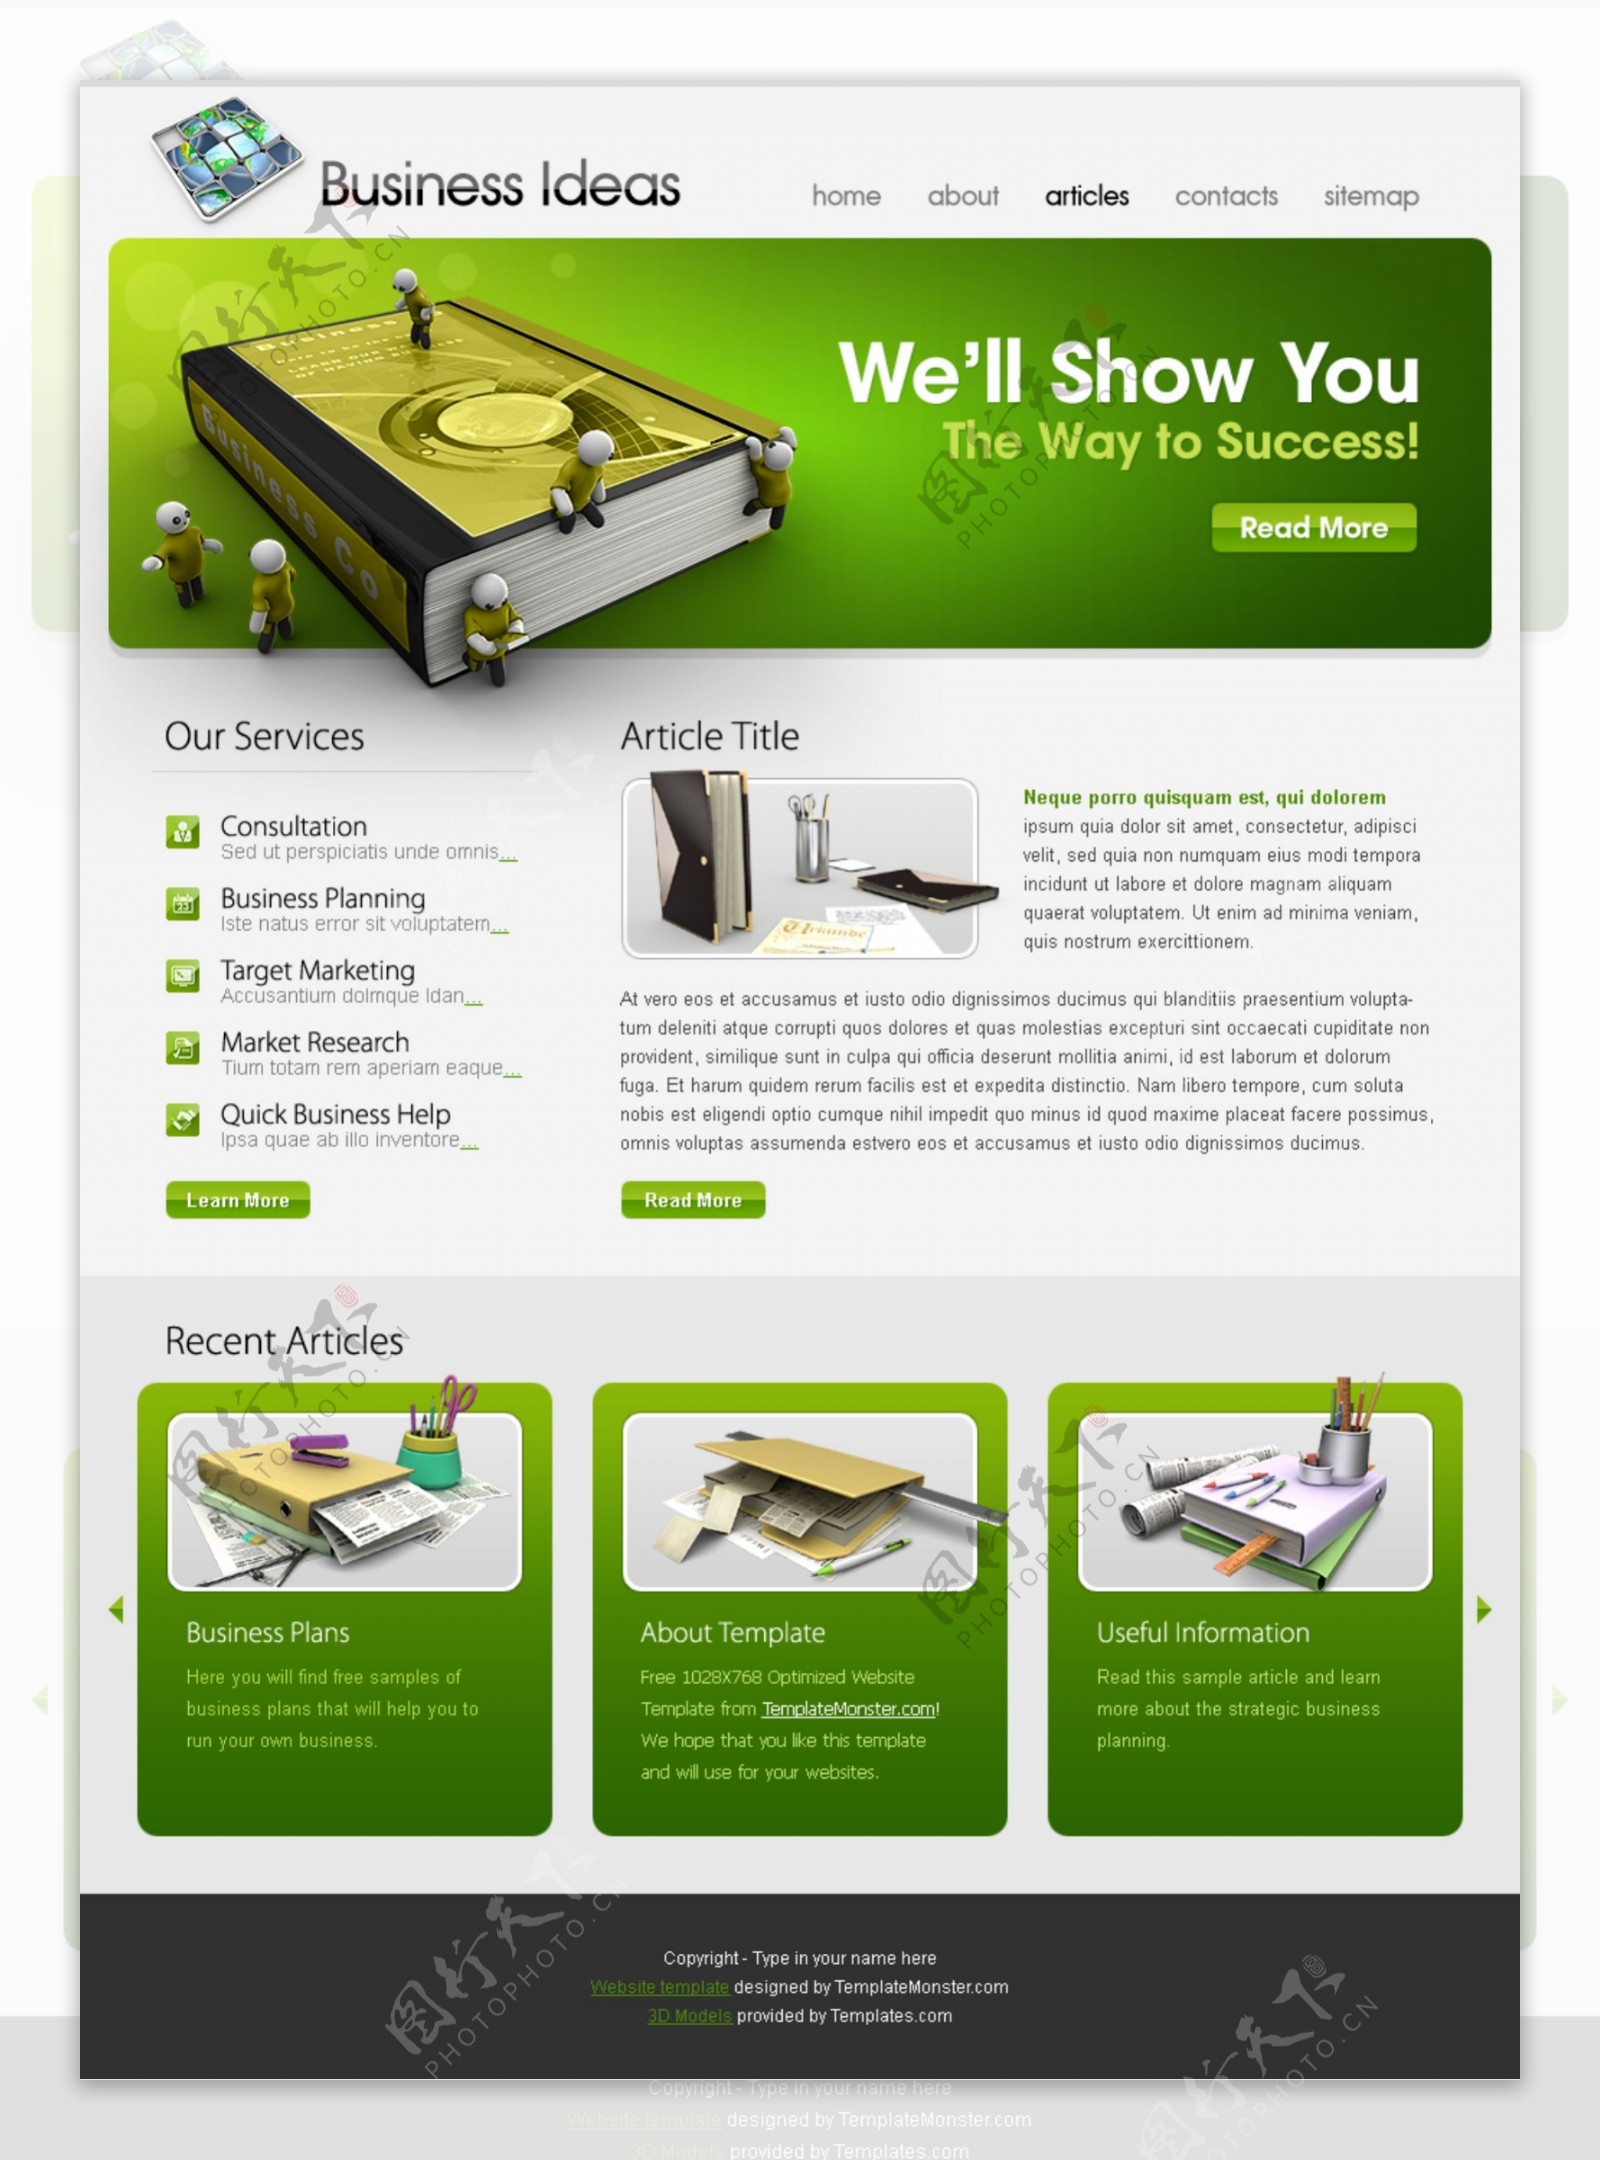 绿色企业网页模板图片